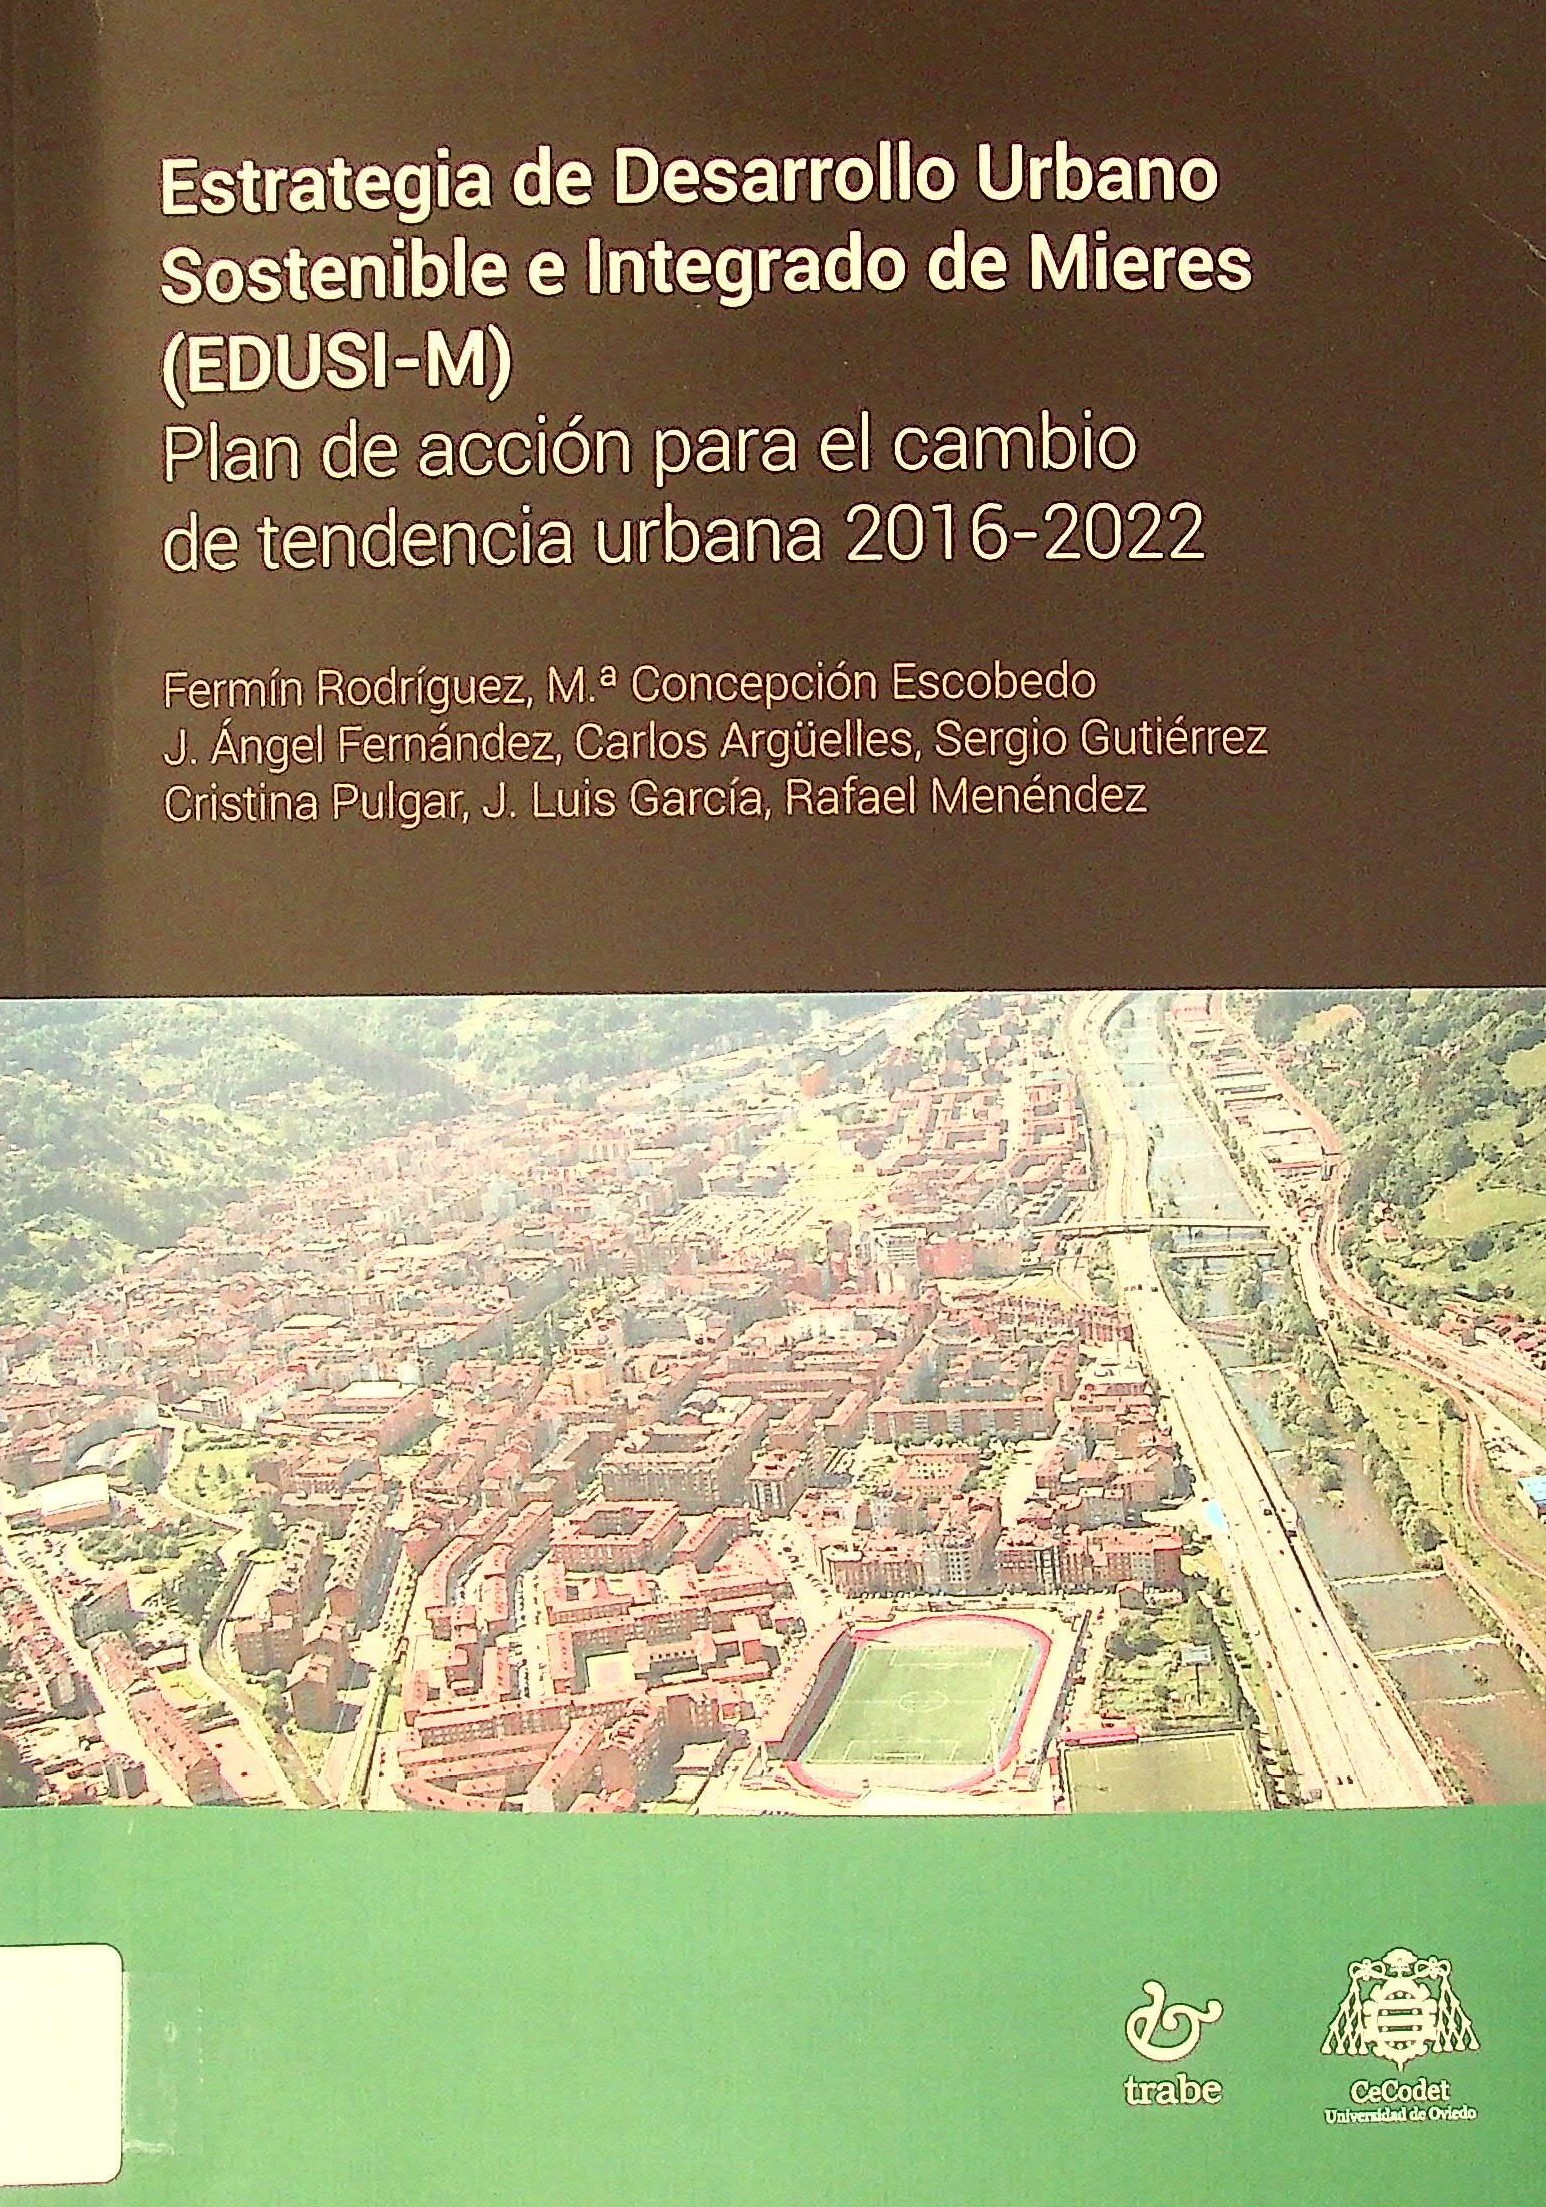 Imagen de portada del libro Estrategia de desarrollo urbano sostenible e integrado de Mieres EDUSI-M